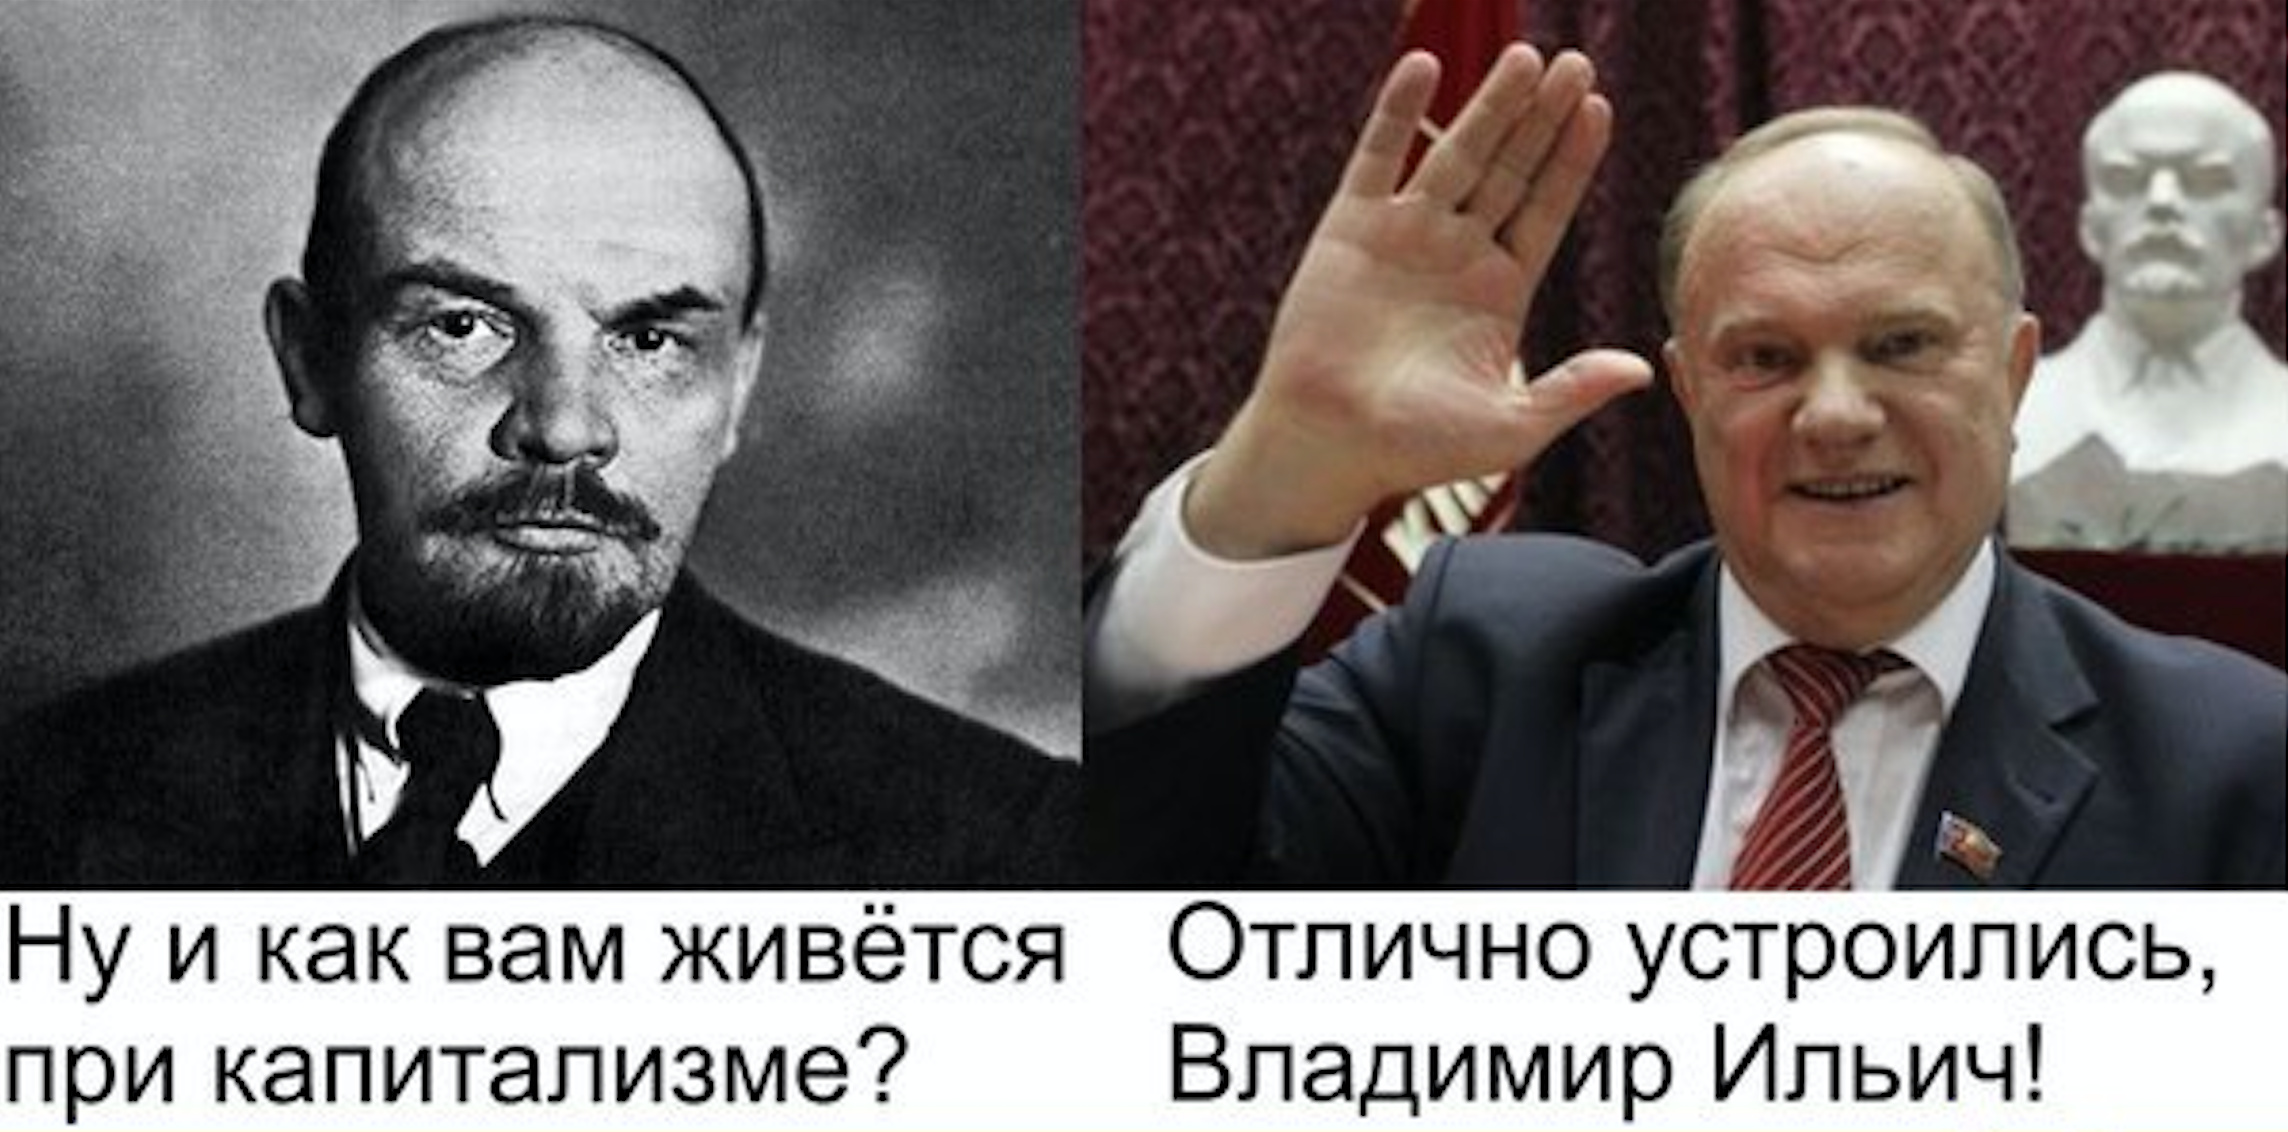 Зюганов и Ленин